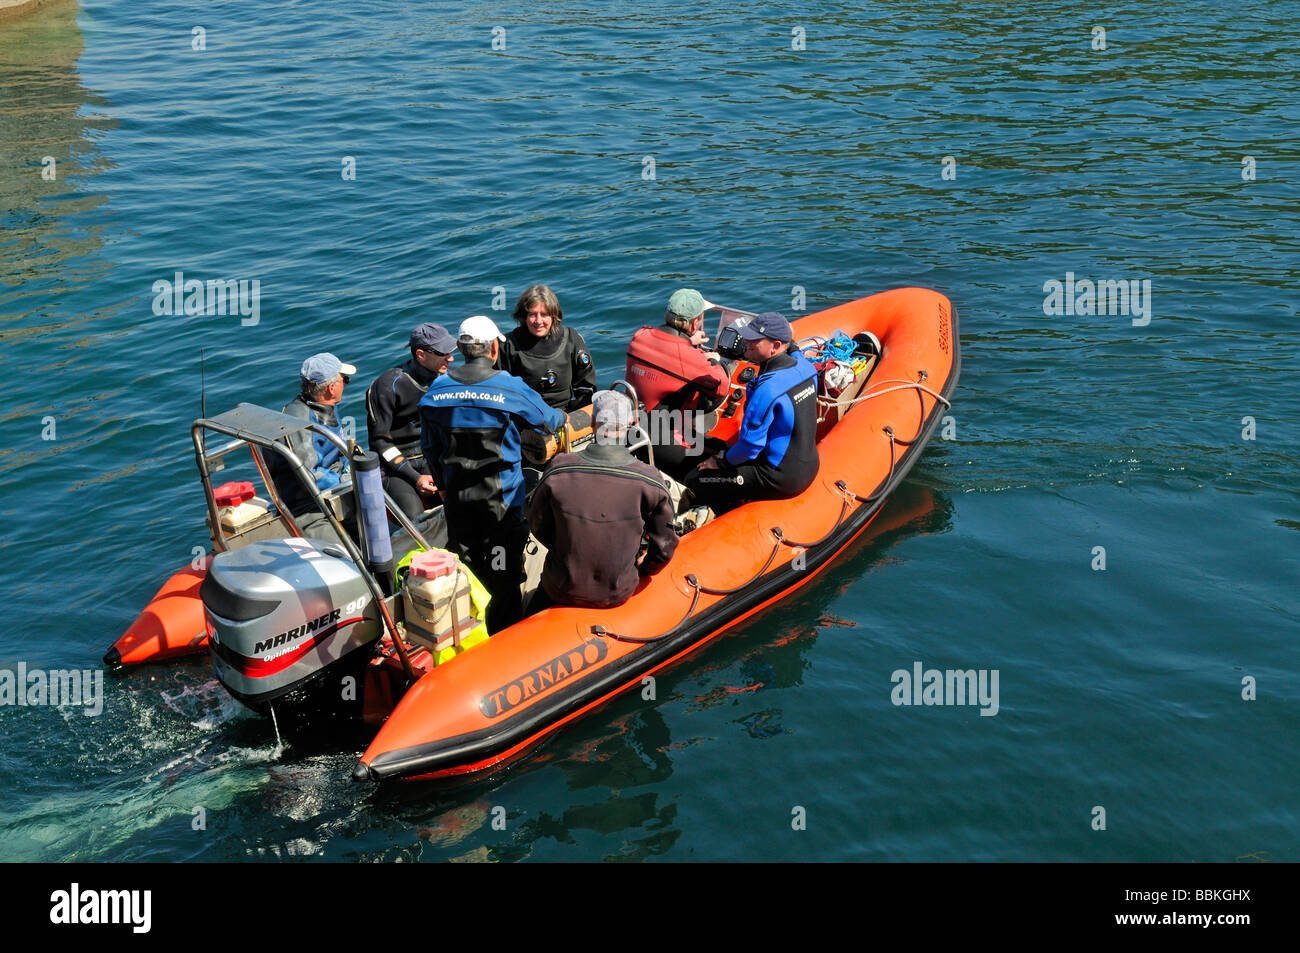 Los submarinistas sobre naranja costilla lancha fuera borda llena de gente la aceleración a través del agua Foto de stock